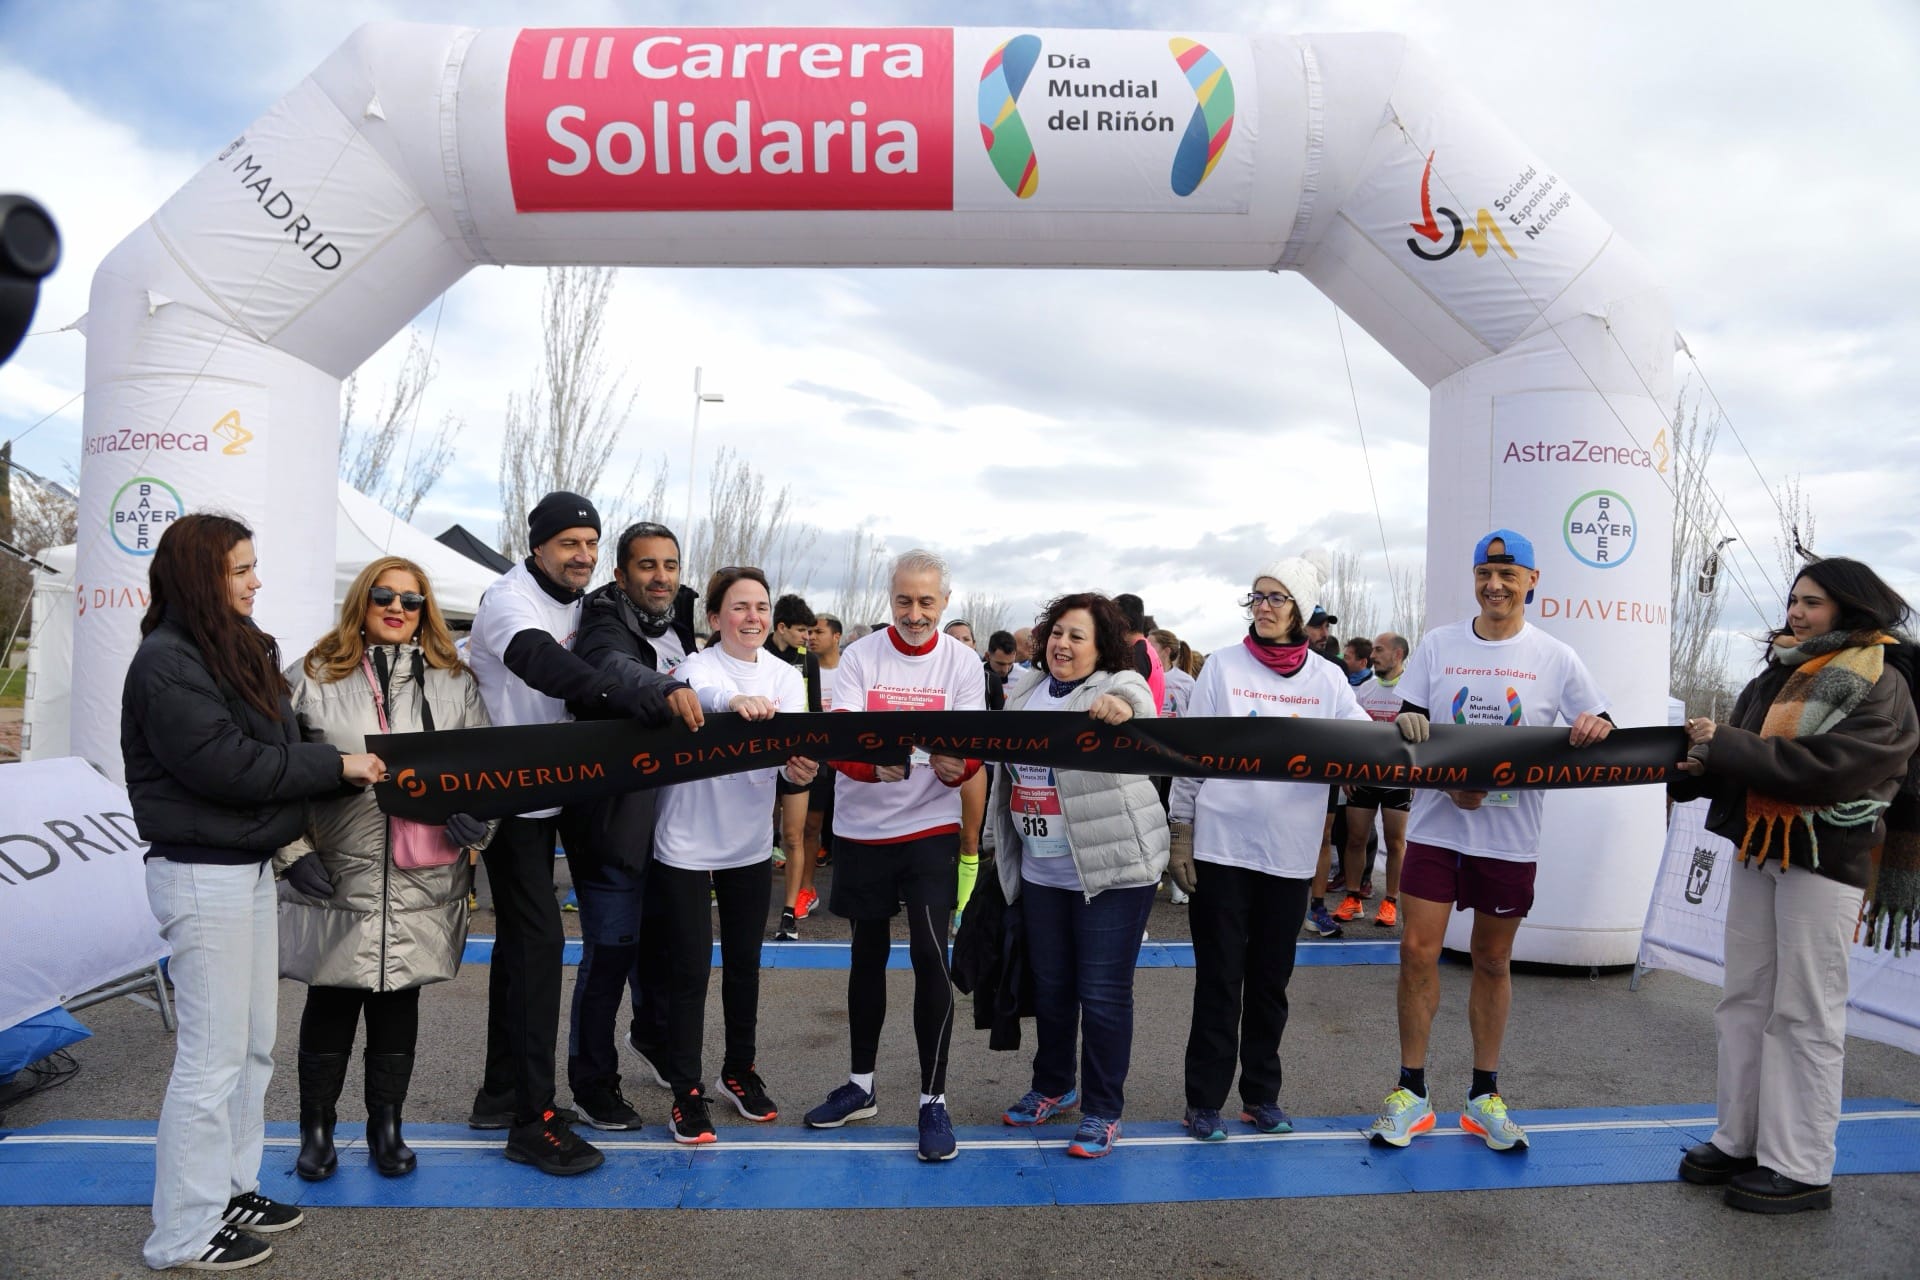 Más de 450 personas participan en la III Carrera Solidaria “Muévete por la Salud Renal” para sensibilizar sobre la enfermedad renal crónica y fomentar el ejercicio y los hábitos saludables como medida de prevención